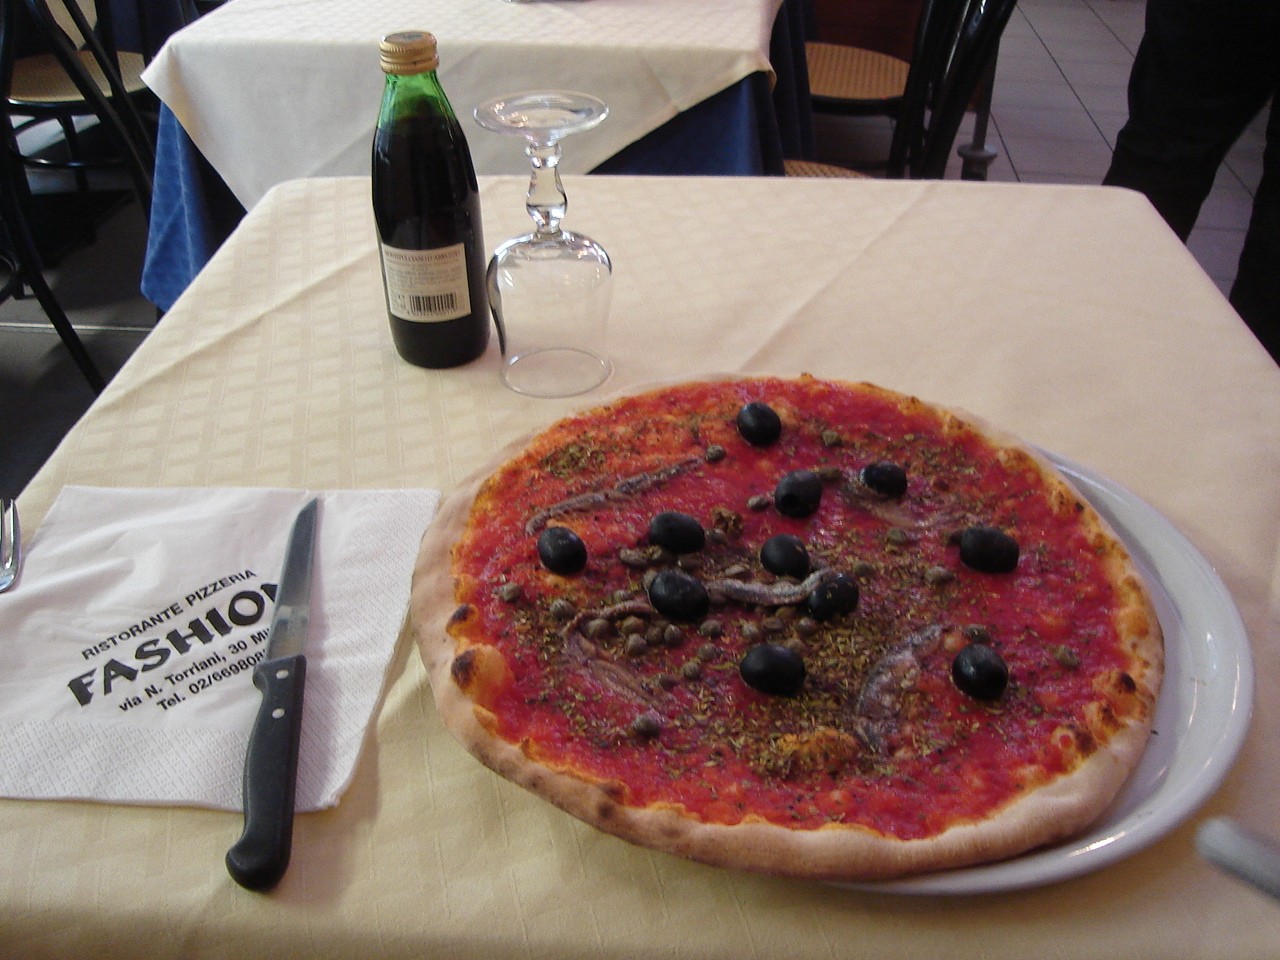 File:Ristorante Pizzeria Fashion, Milano.JPG - Wikimedia Commons